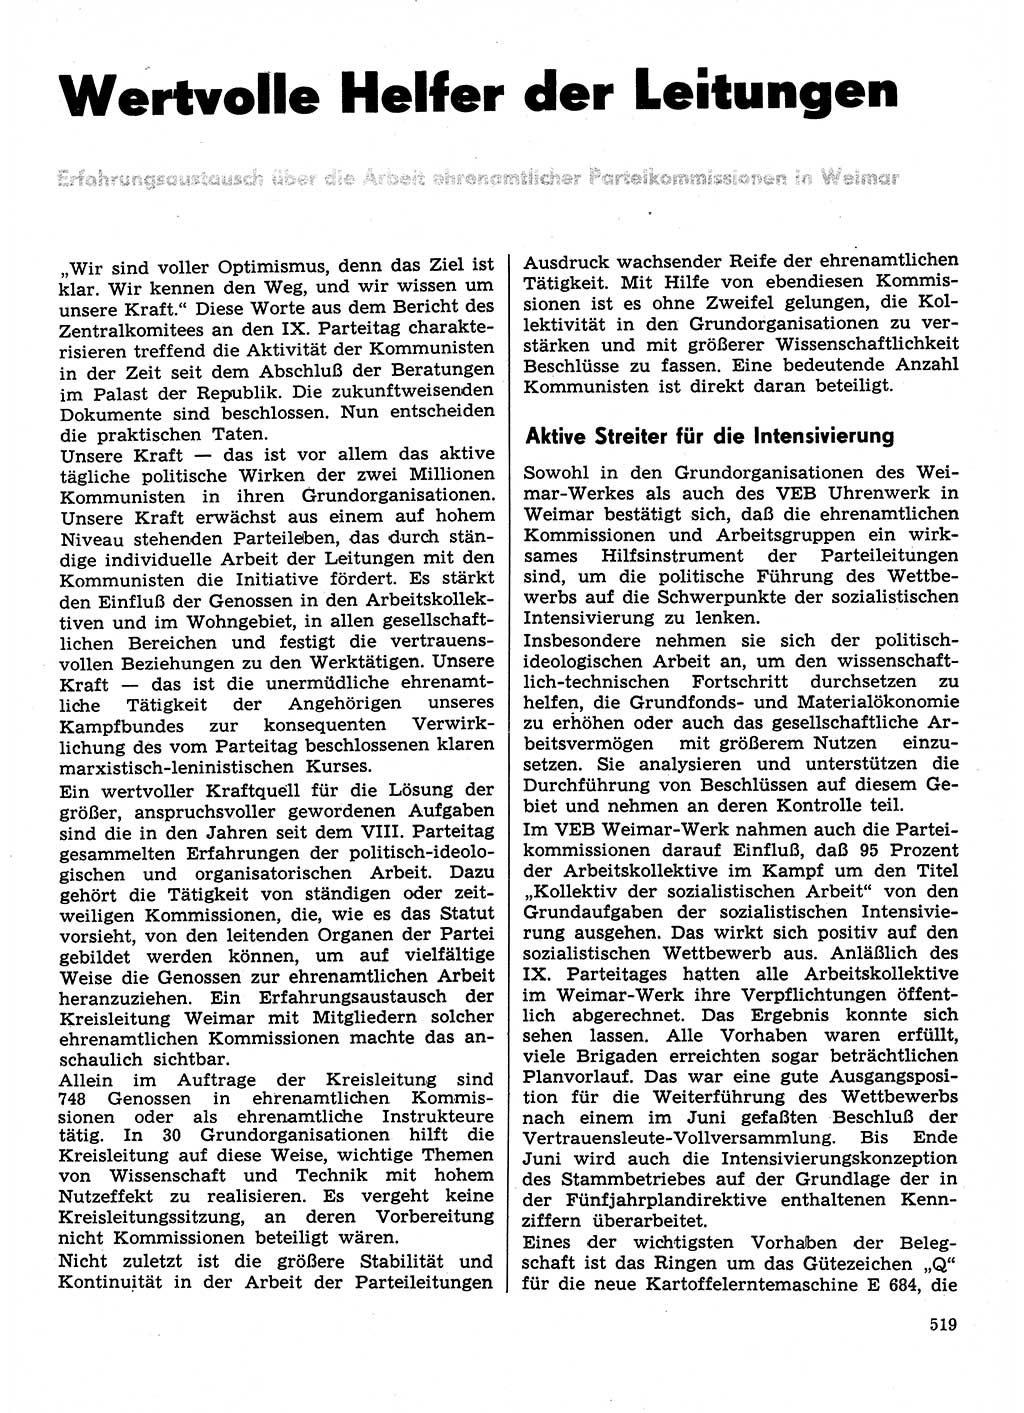 Neuer Weg (NW), Organ des Zentralkomitees (ZK) der SED (Sozialistische Einheitspartei Deutschlands) für Fragen des Parteilebens, 31. Jahrgang [Deutsche Demokratische Republik (DDR)] 1976, Seite 519 (NW ZK SED DDR 1976, S. 519)